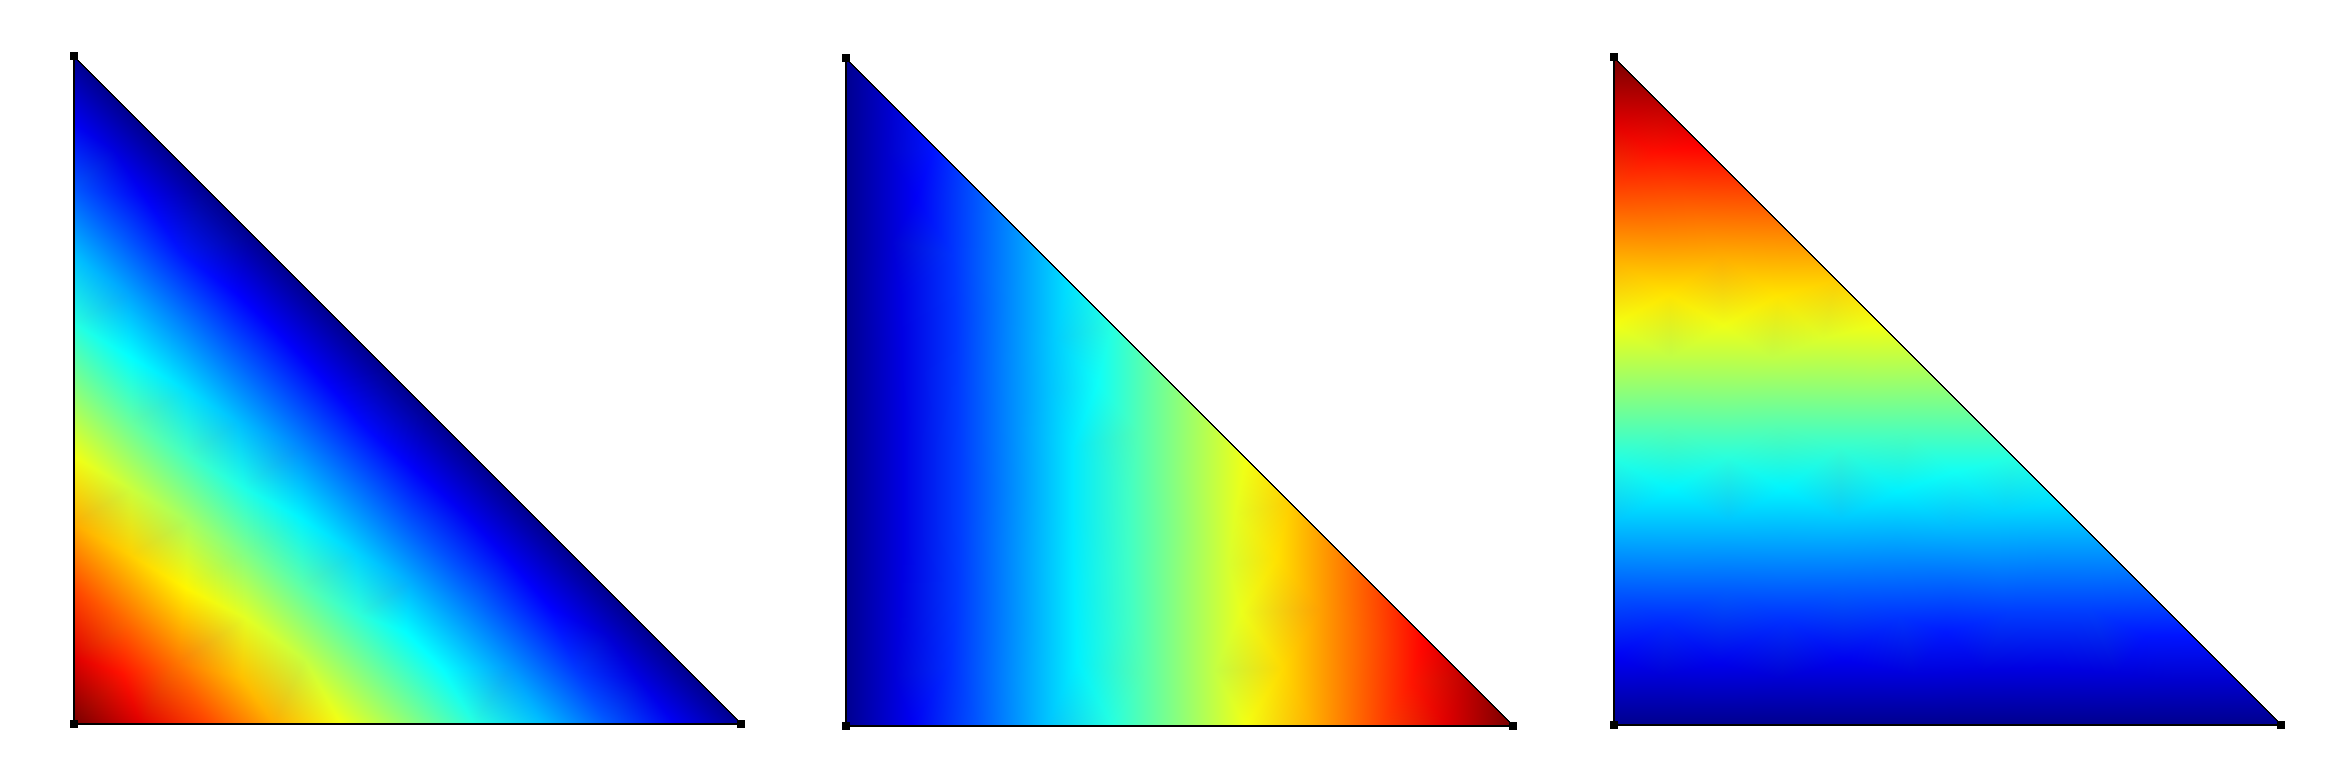 Fonctions de base Langrange sur triangle